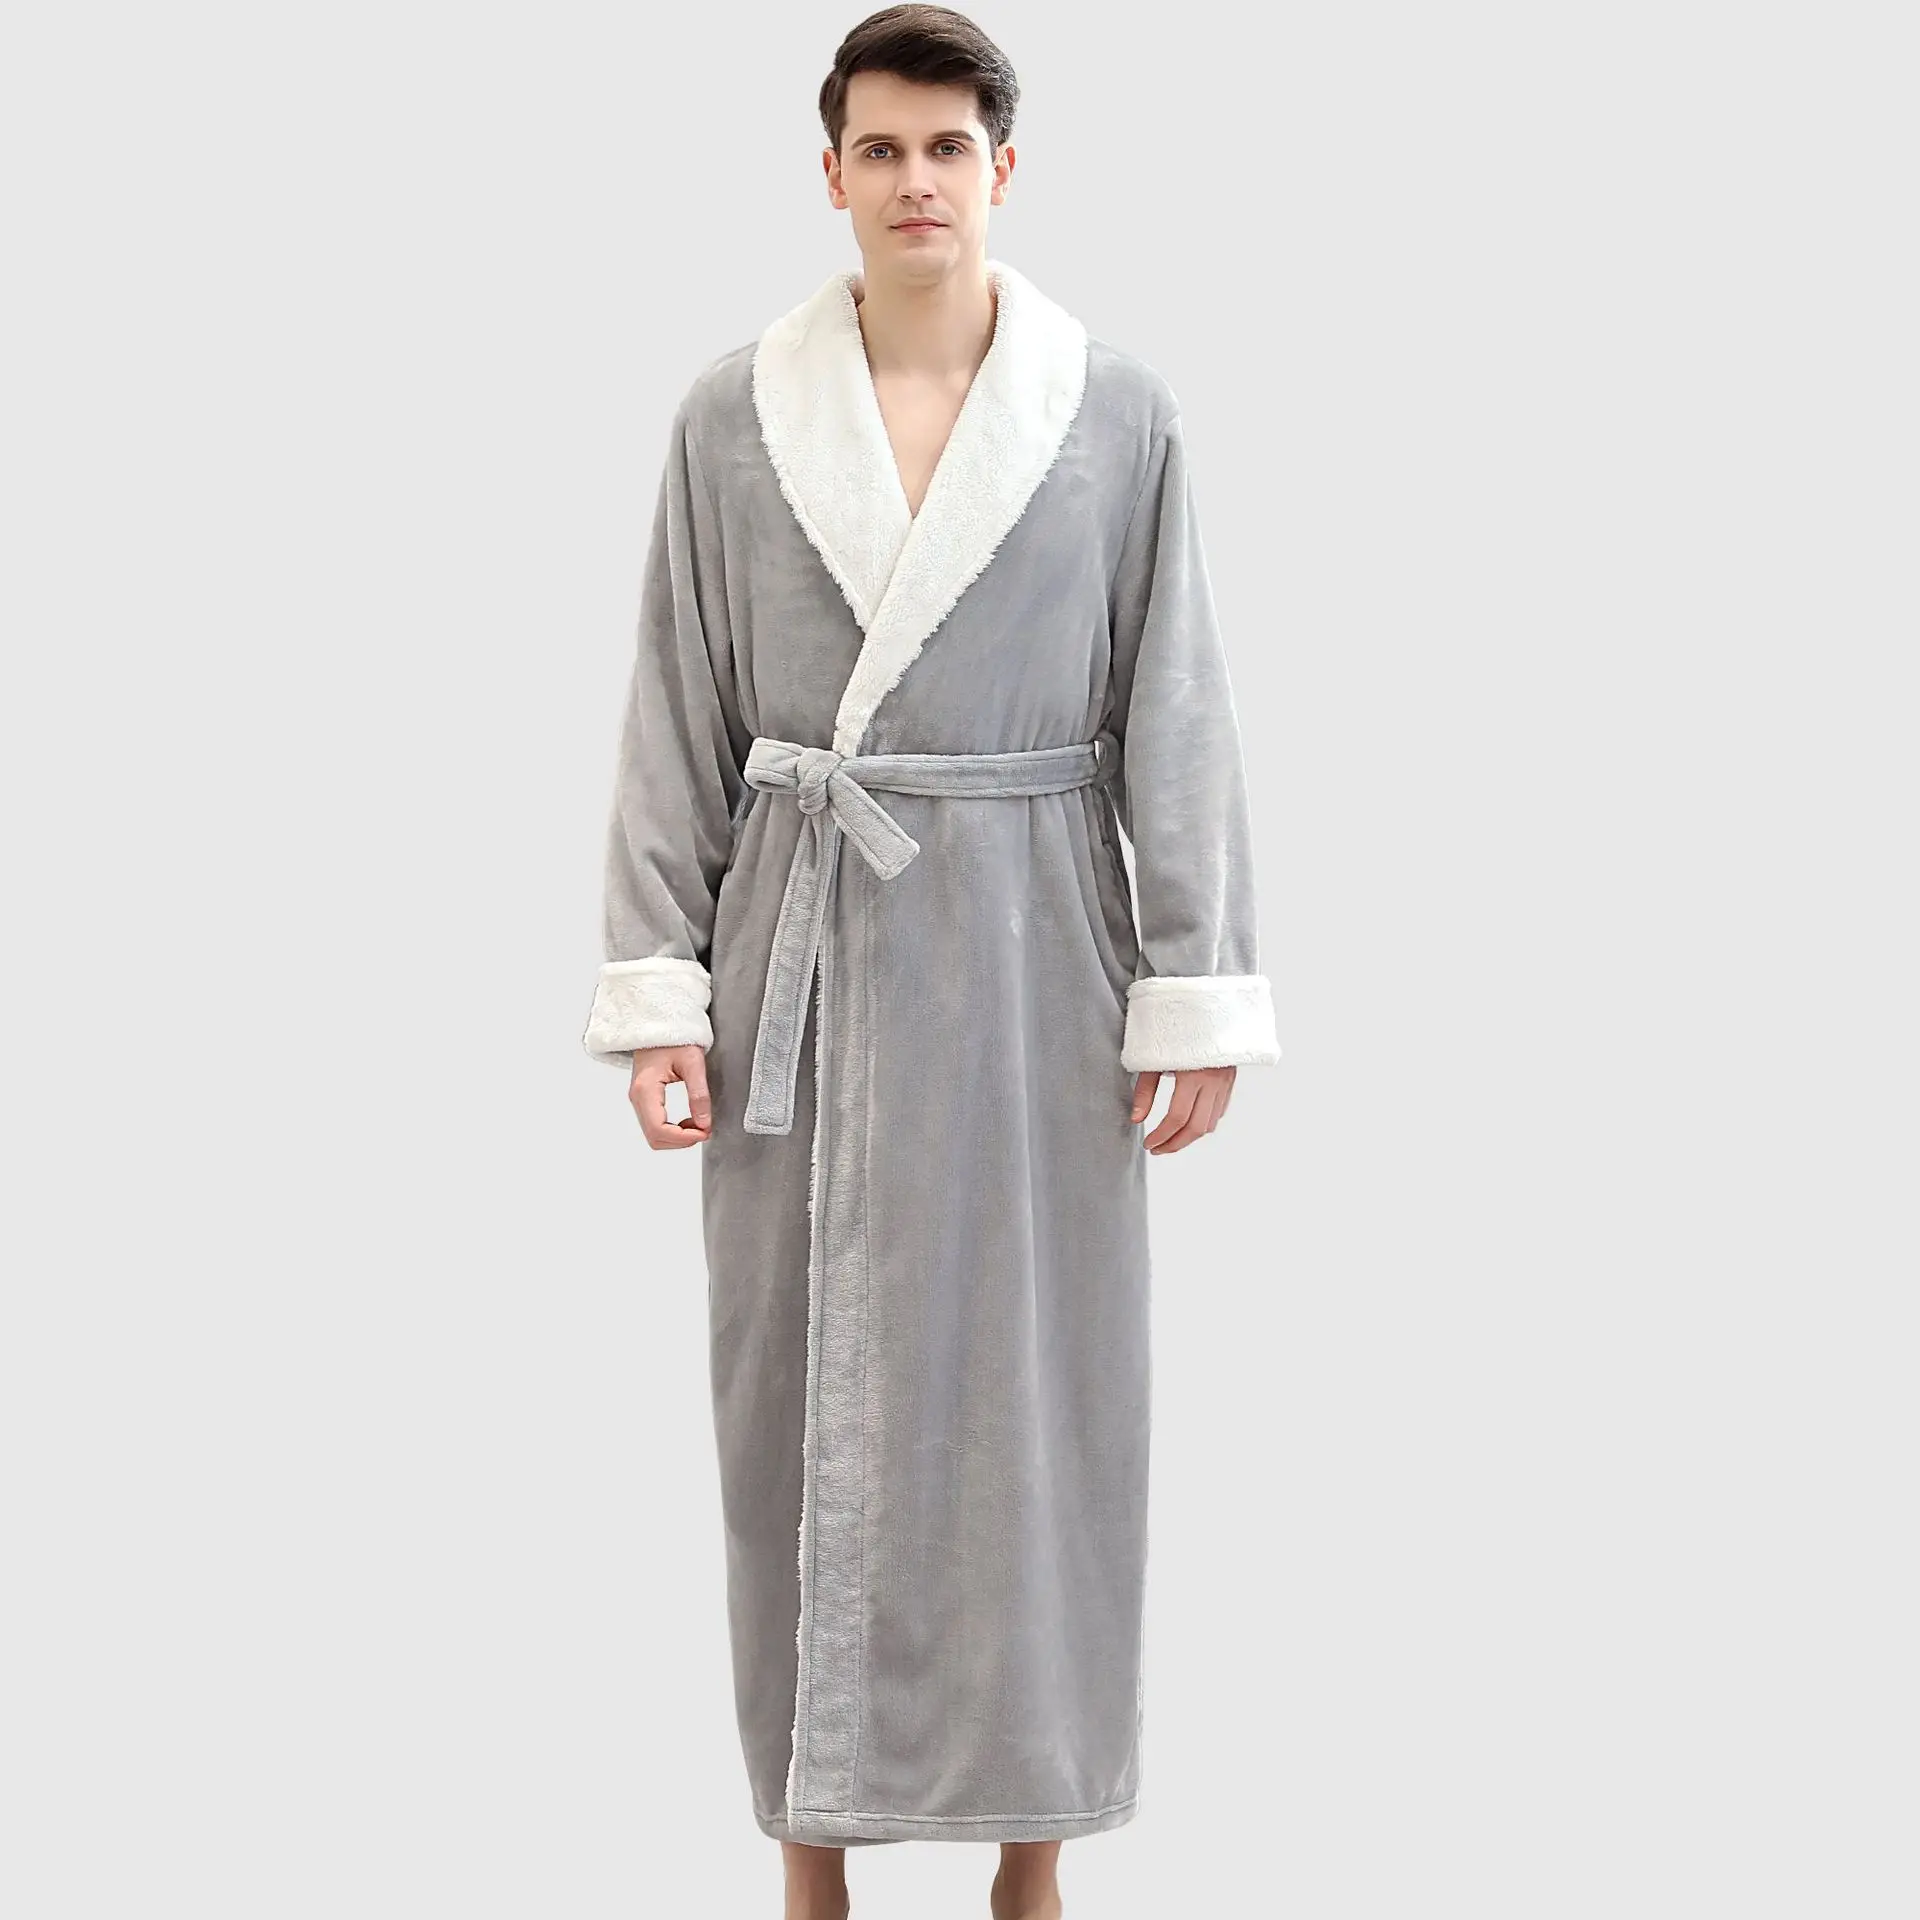 服务支持男式睡衣成人加厚保暖个性化浴袍超柔软蓬松法兰绒羊毛浴衣